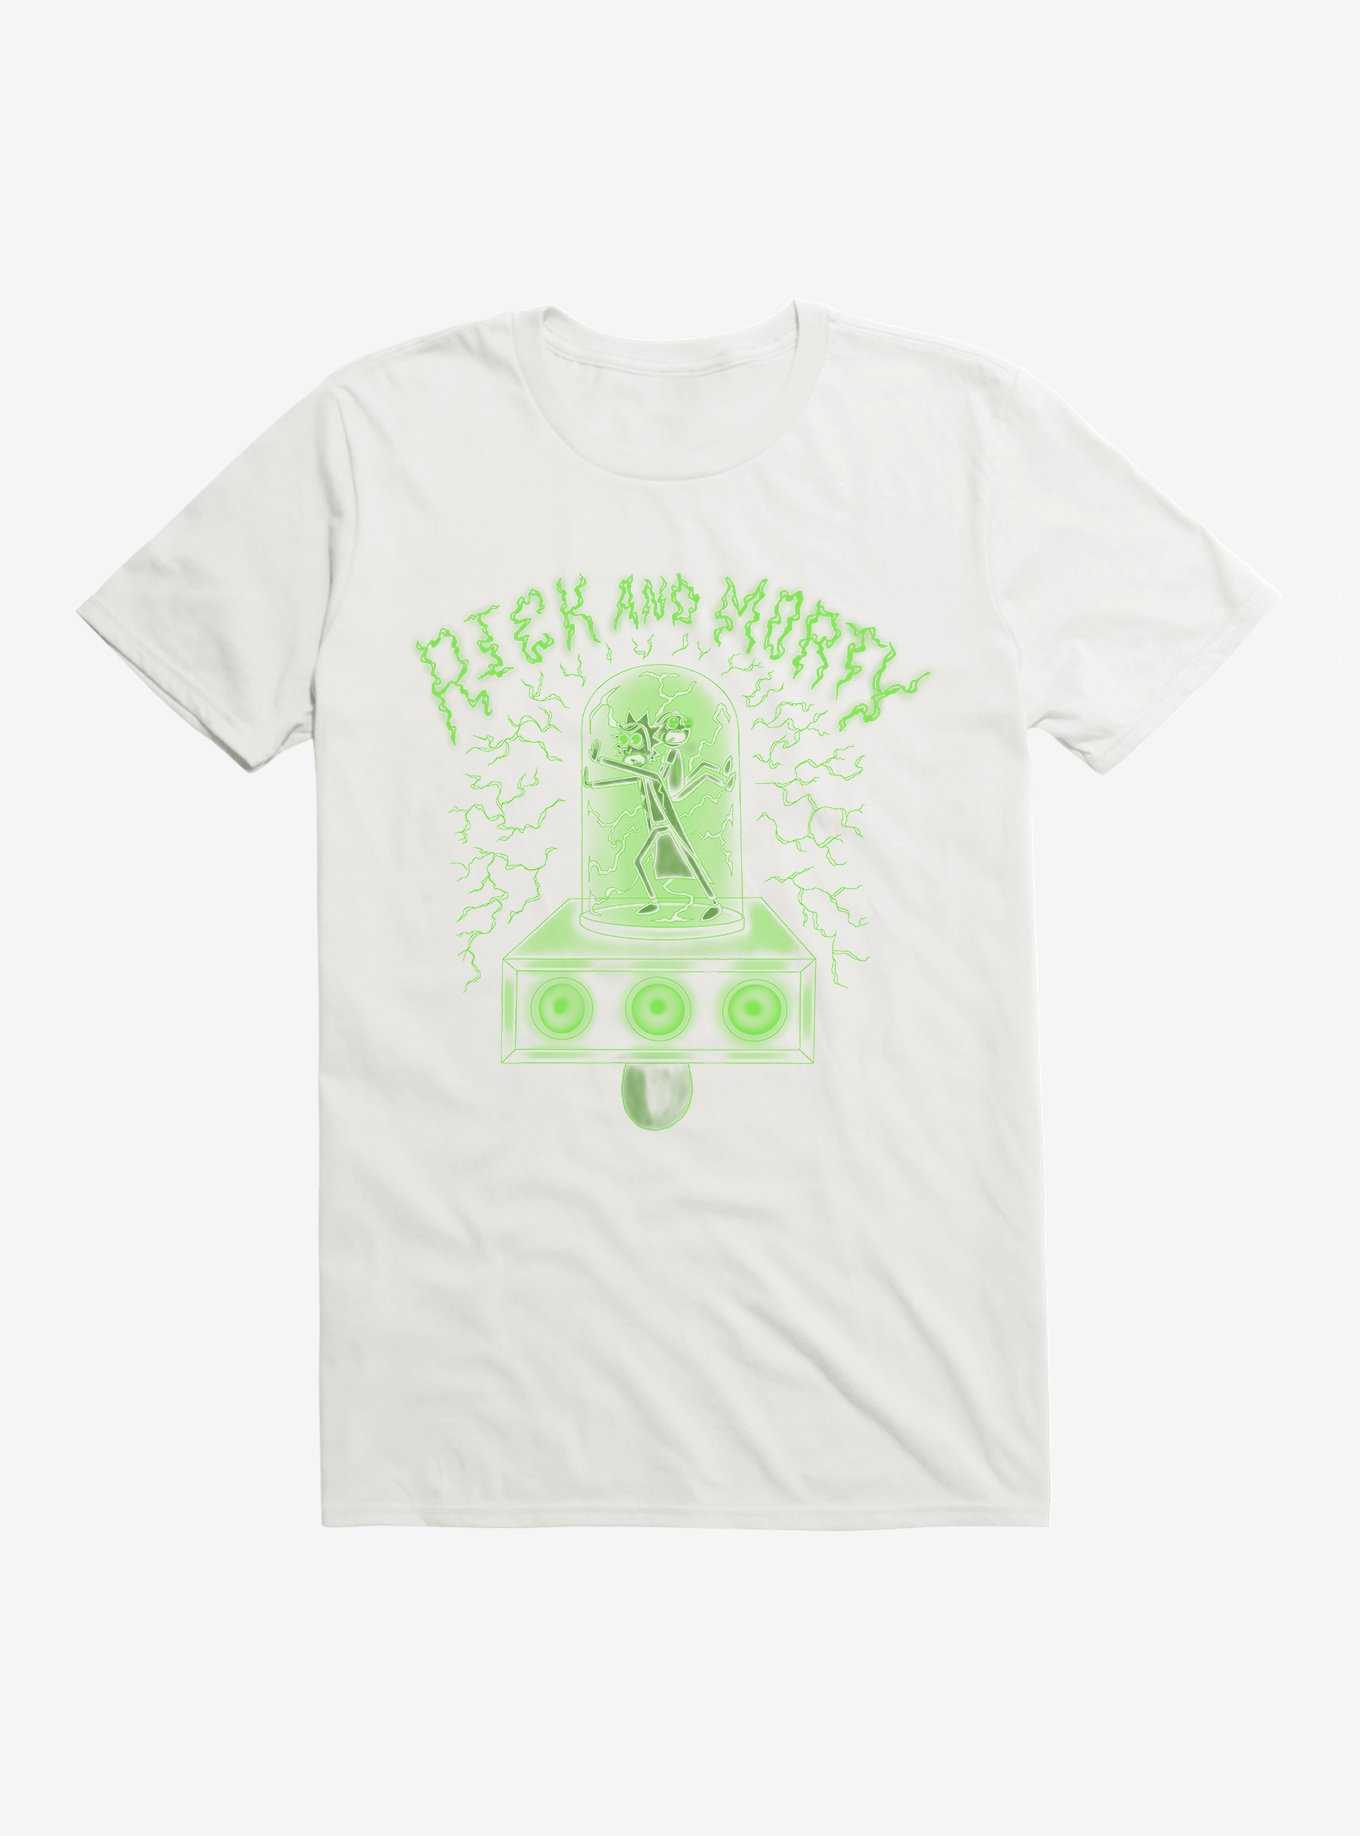 Rick And Morty Portal Gun T-Shirt, , hi-res